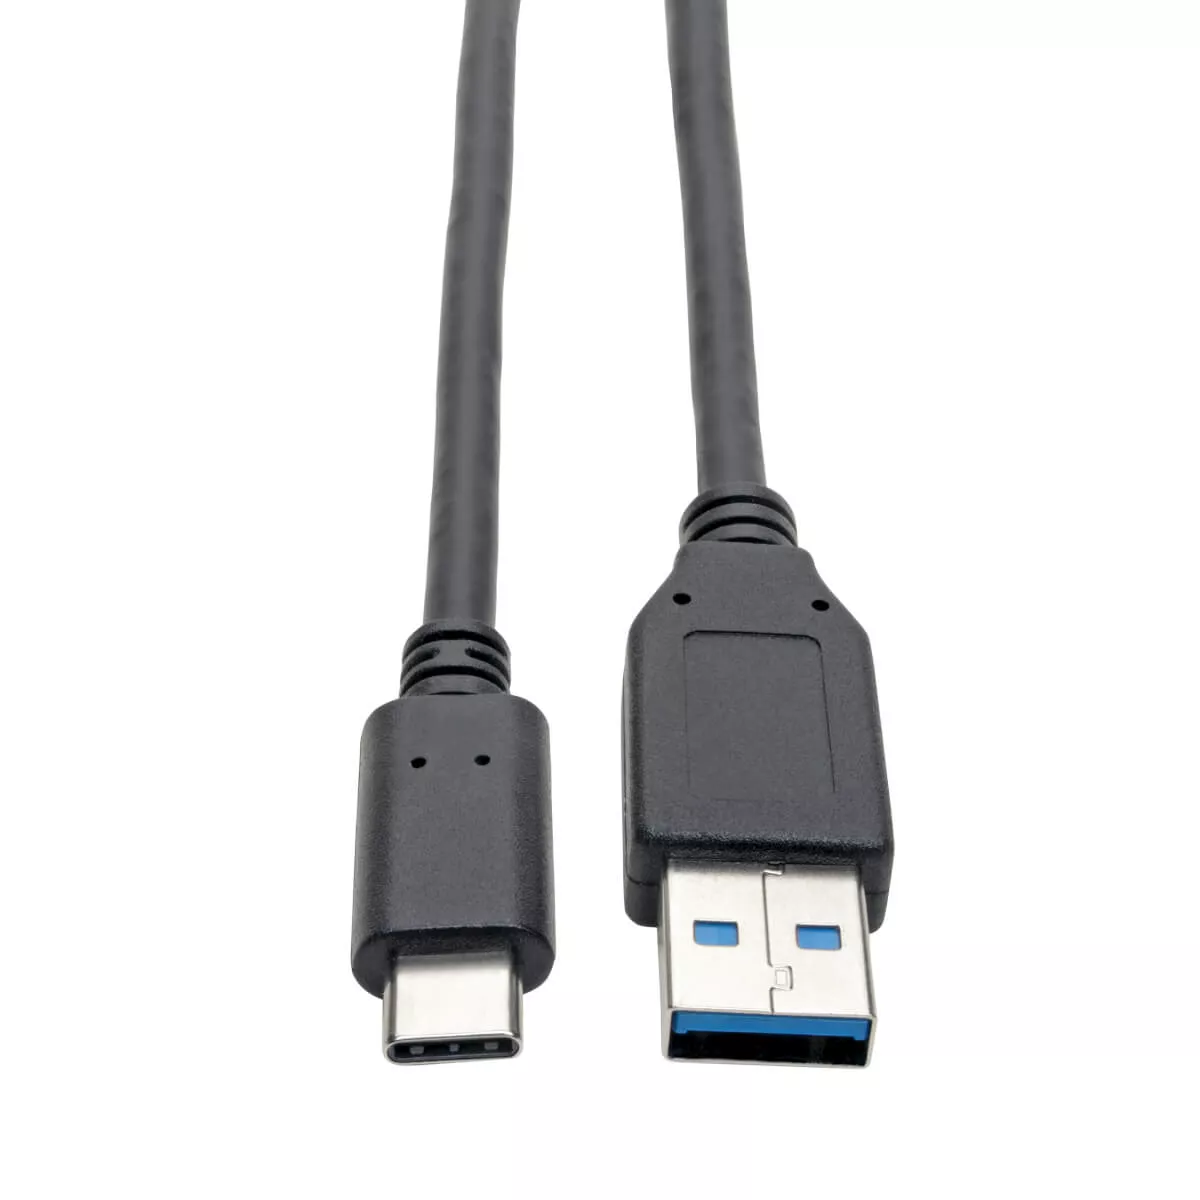 Achat EATON TRIPPLITE USB-C to USB-A Cable M/M USB 3.1 Gen au meilleur prix